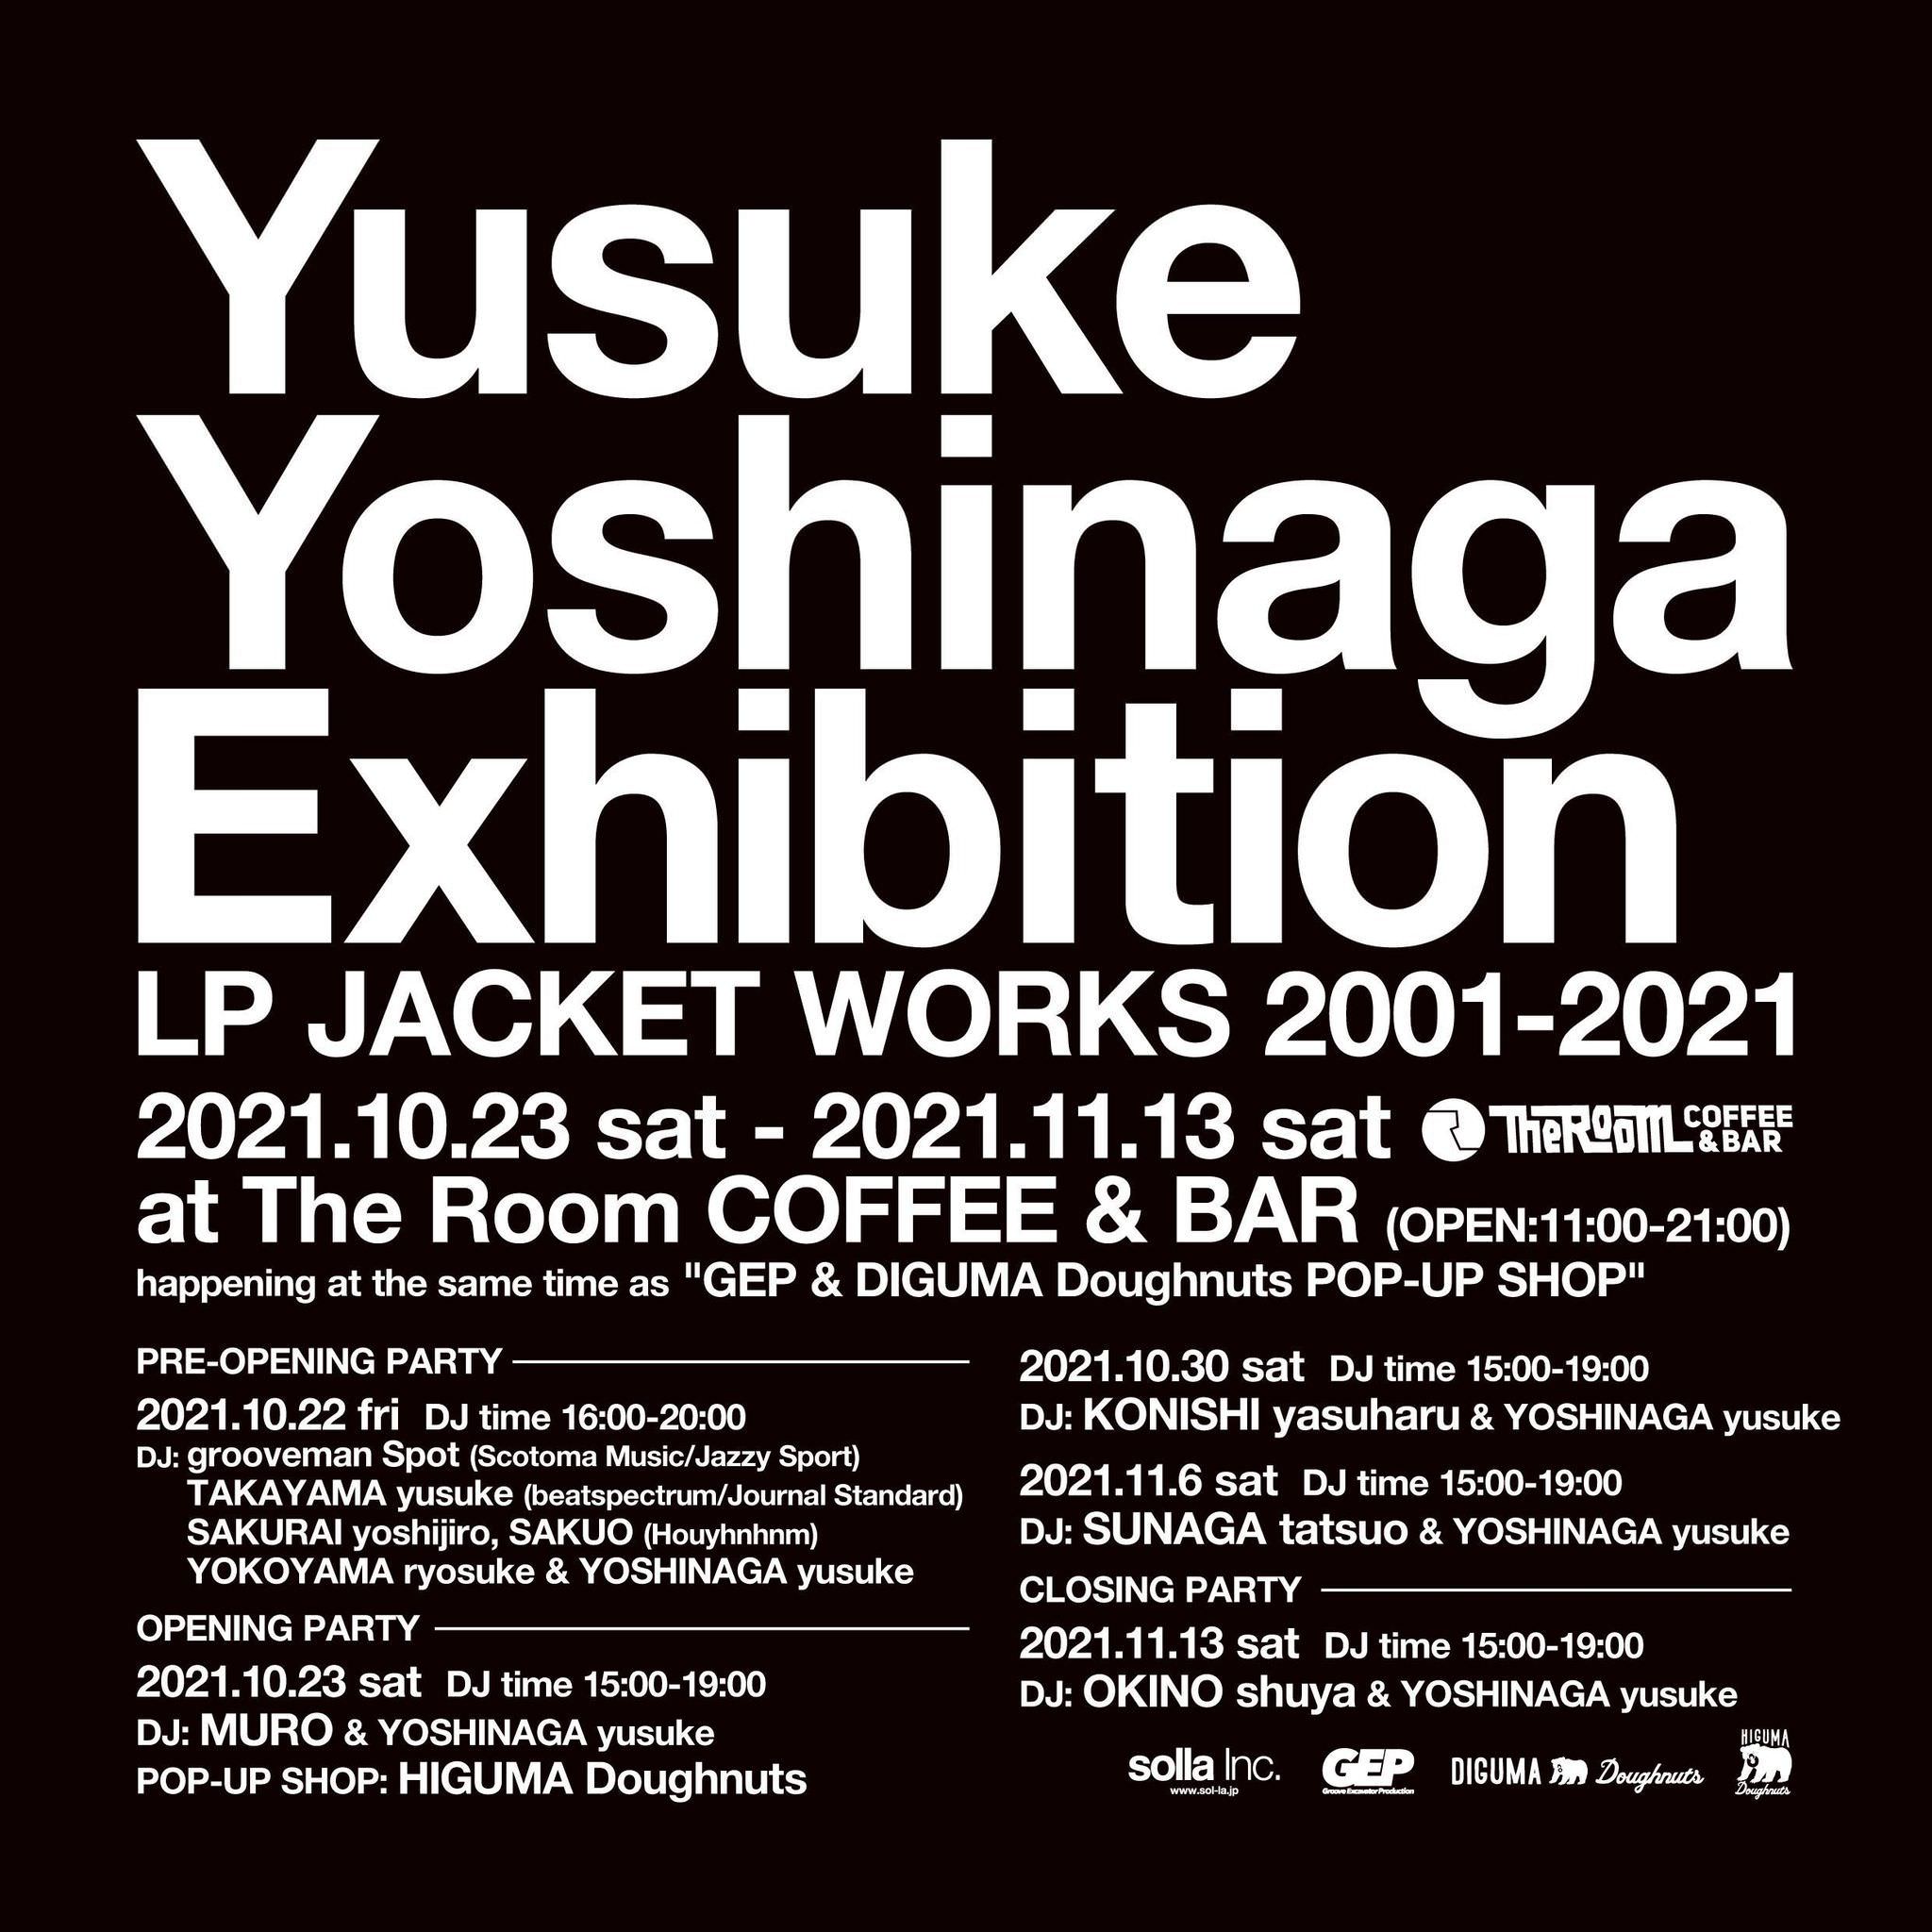 クラブ・ミュージックから、メジャー・アーティストまで
年間100タイトルのCDやアナログ盤を手掛ける、
デザイナー/フォトグラファー/DJの吉永祐介氏の展覧会
『Yusuke Yoshinaga Exhibition 
LP JACKET WORKS 2001-2021』が、
10月23(土)～11月13日(土)まで、
The Room COFFEE & BARにて開催！